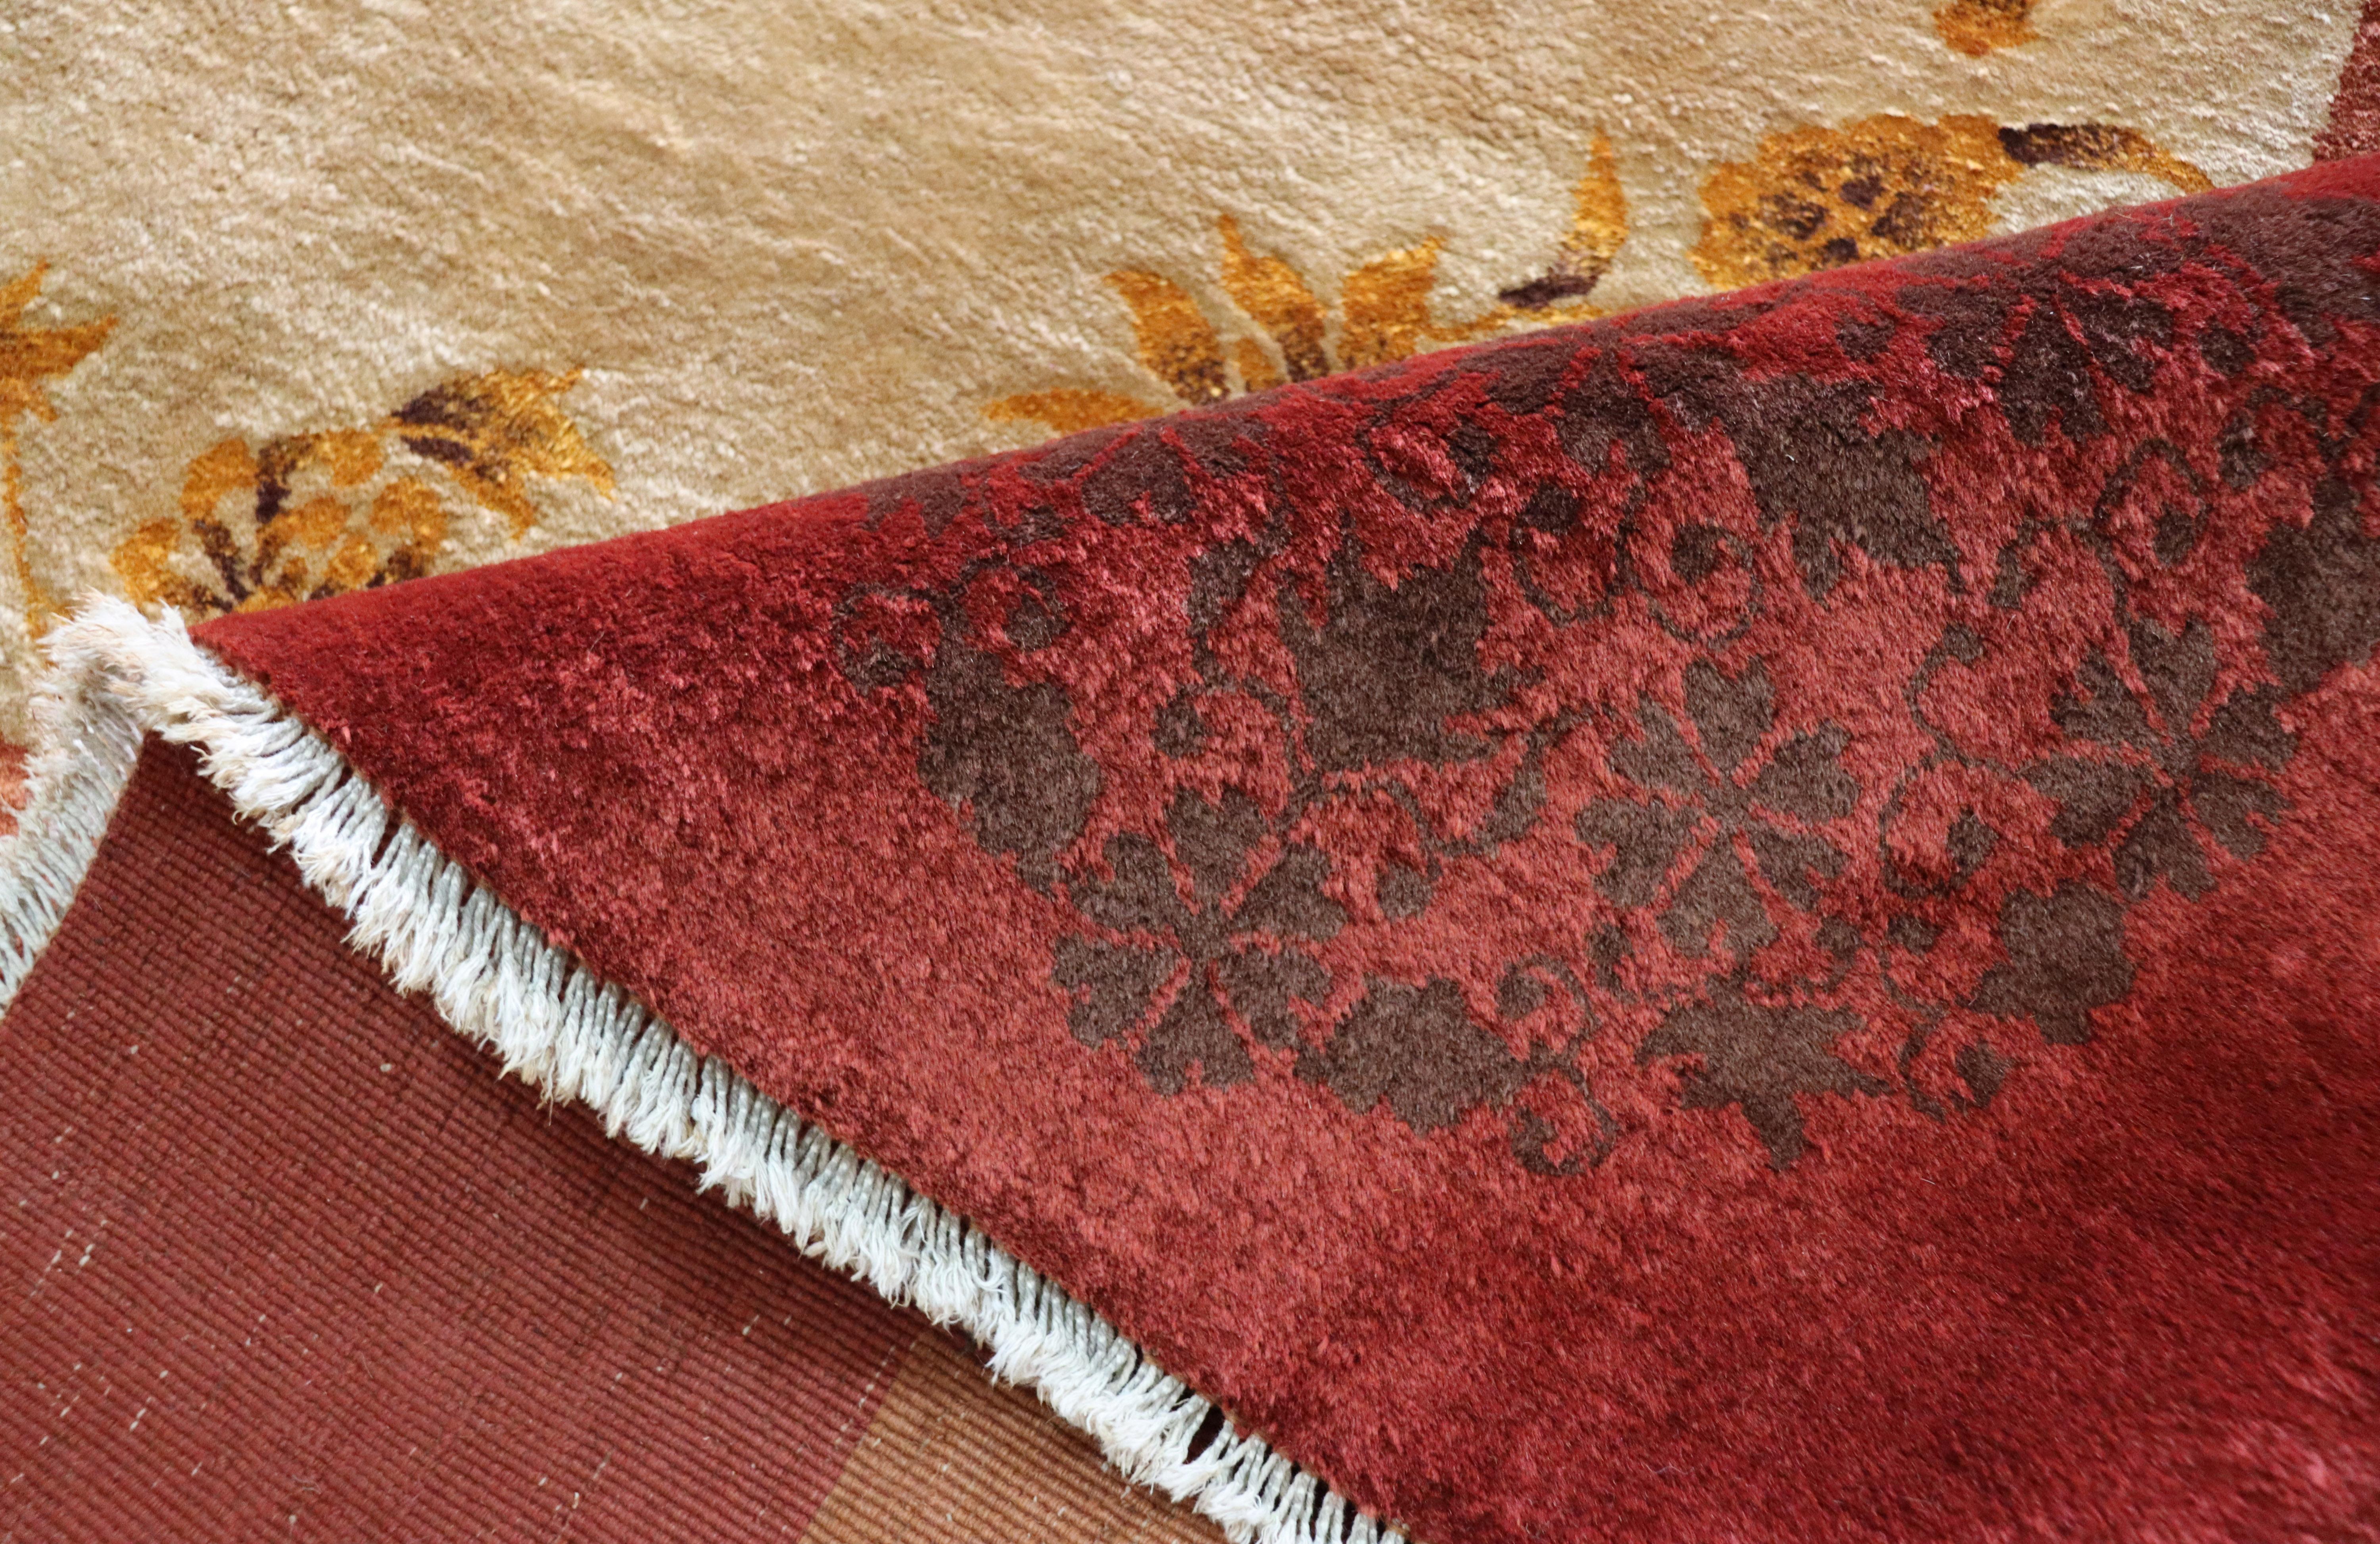 Antique Art Deco Chinese Carpet, Unusual, 8'10